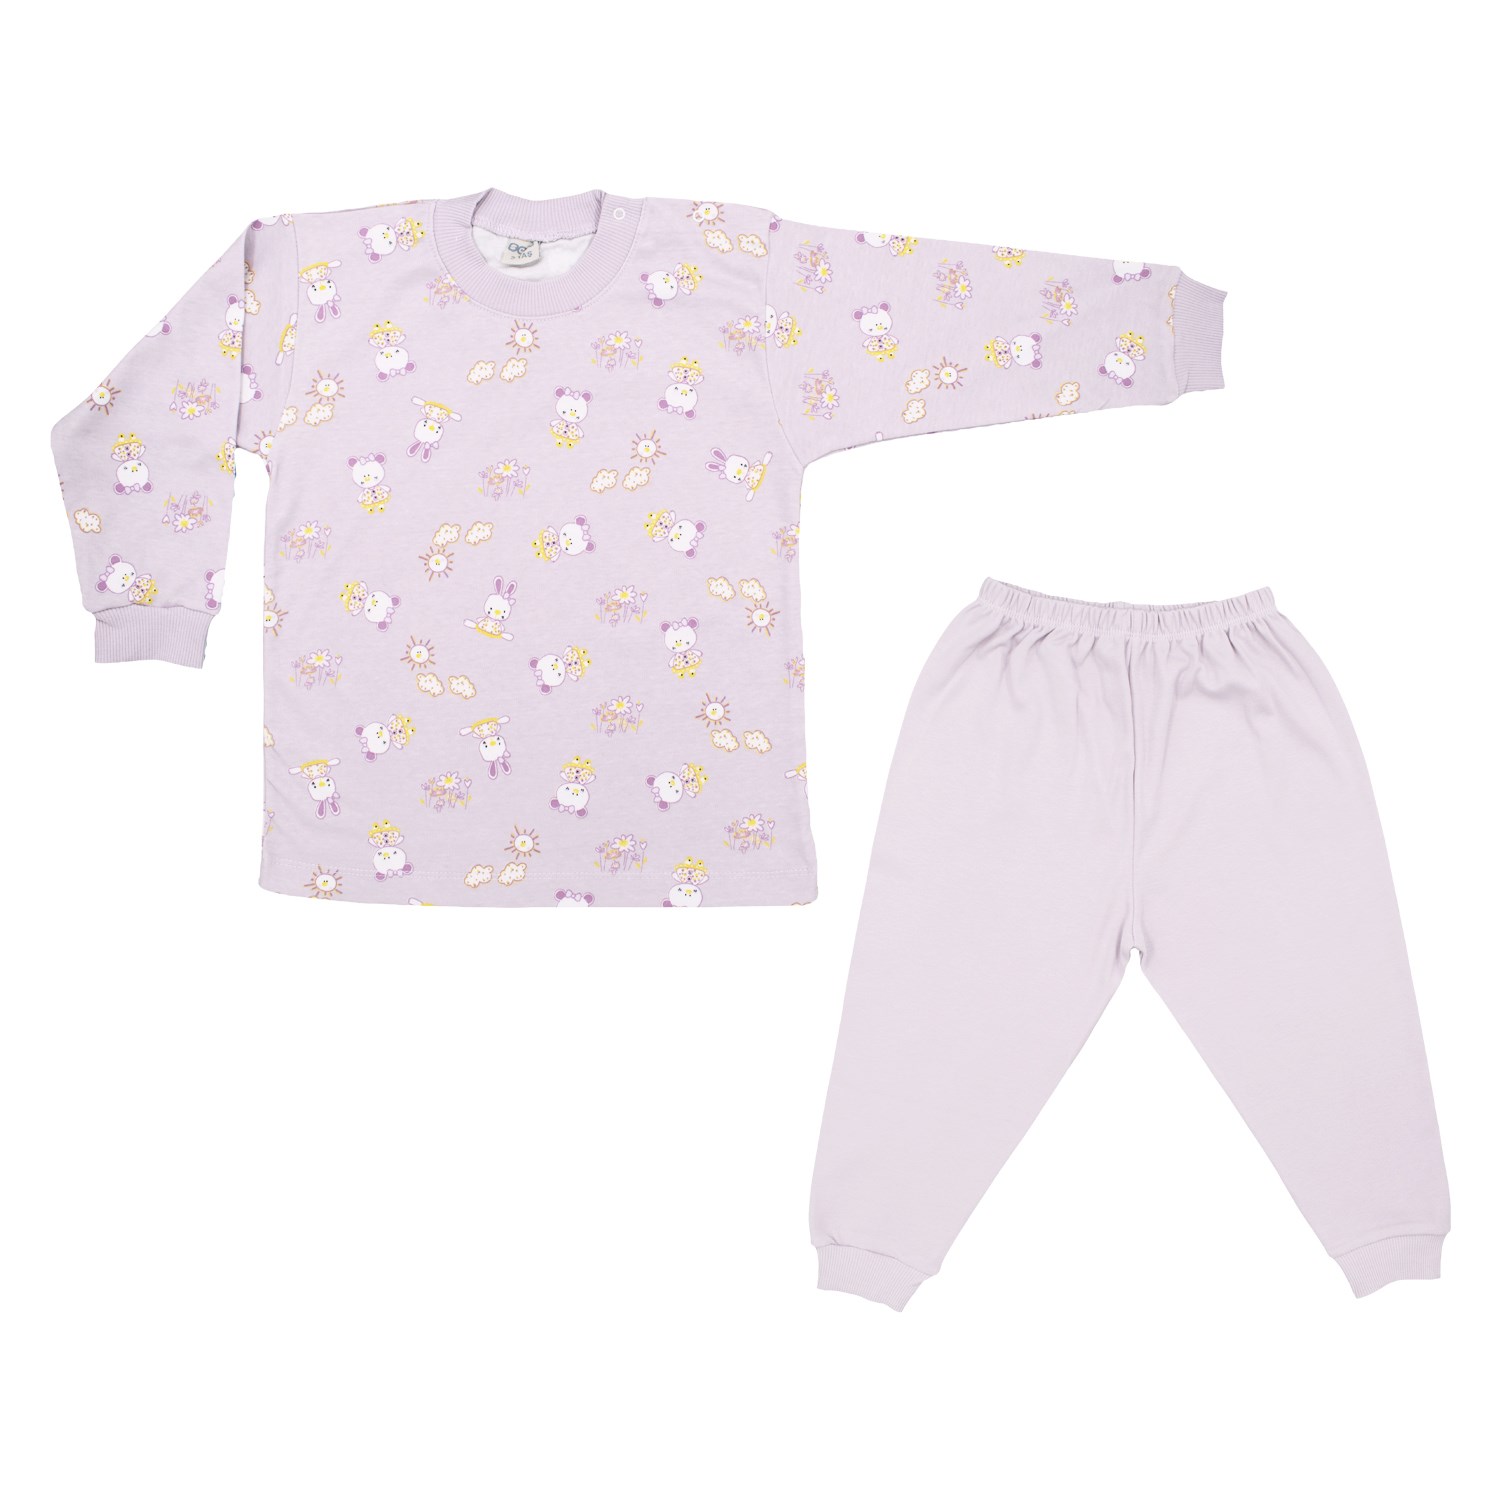 Sebi Bebe Ayılı Kız Bebek Pijama Takımı 2418 Lila